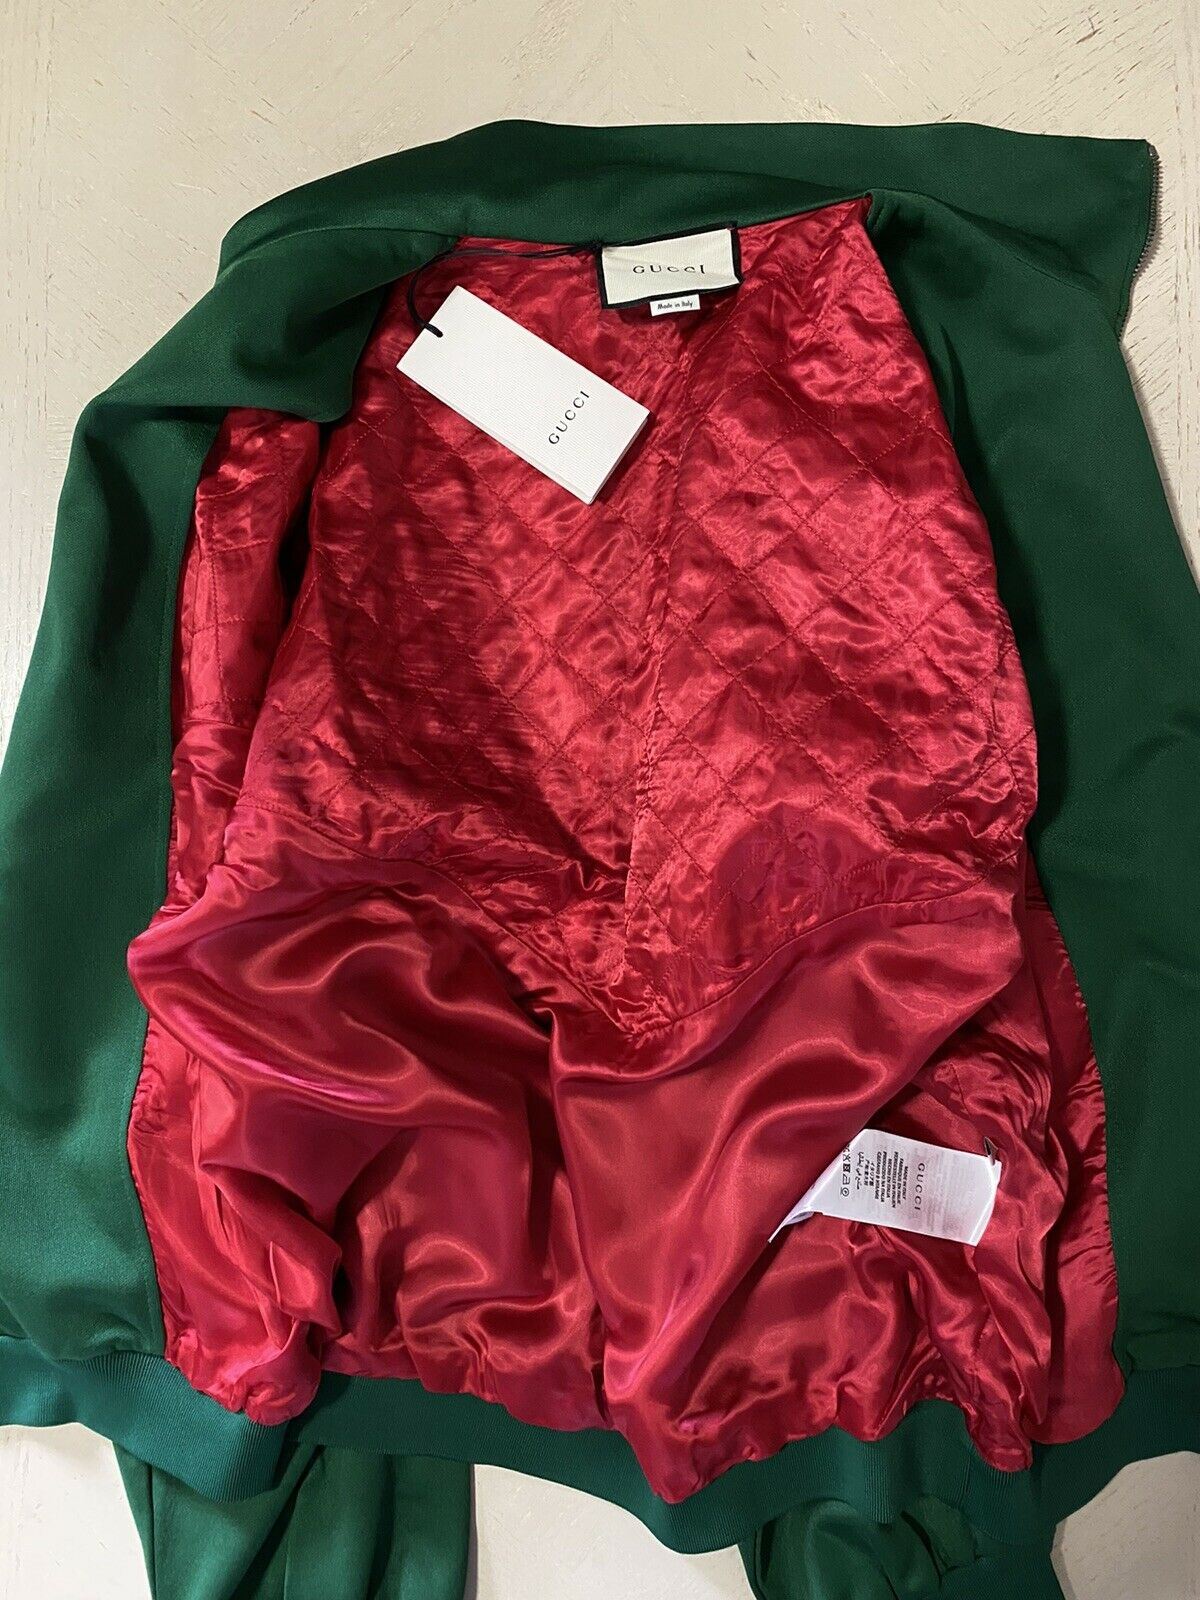 Мужская спортивная куртка Gucci, зеленый/разноцветный, размер M, NWT, 2980 долларов США, Италия